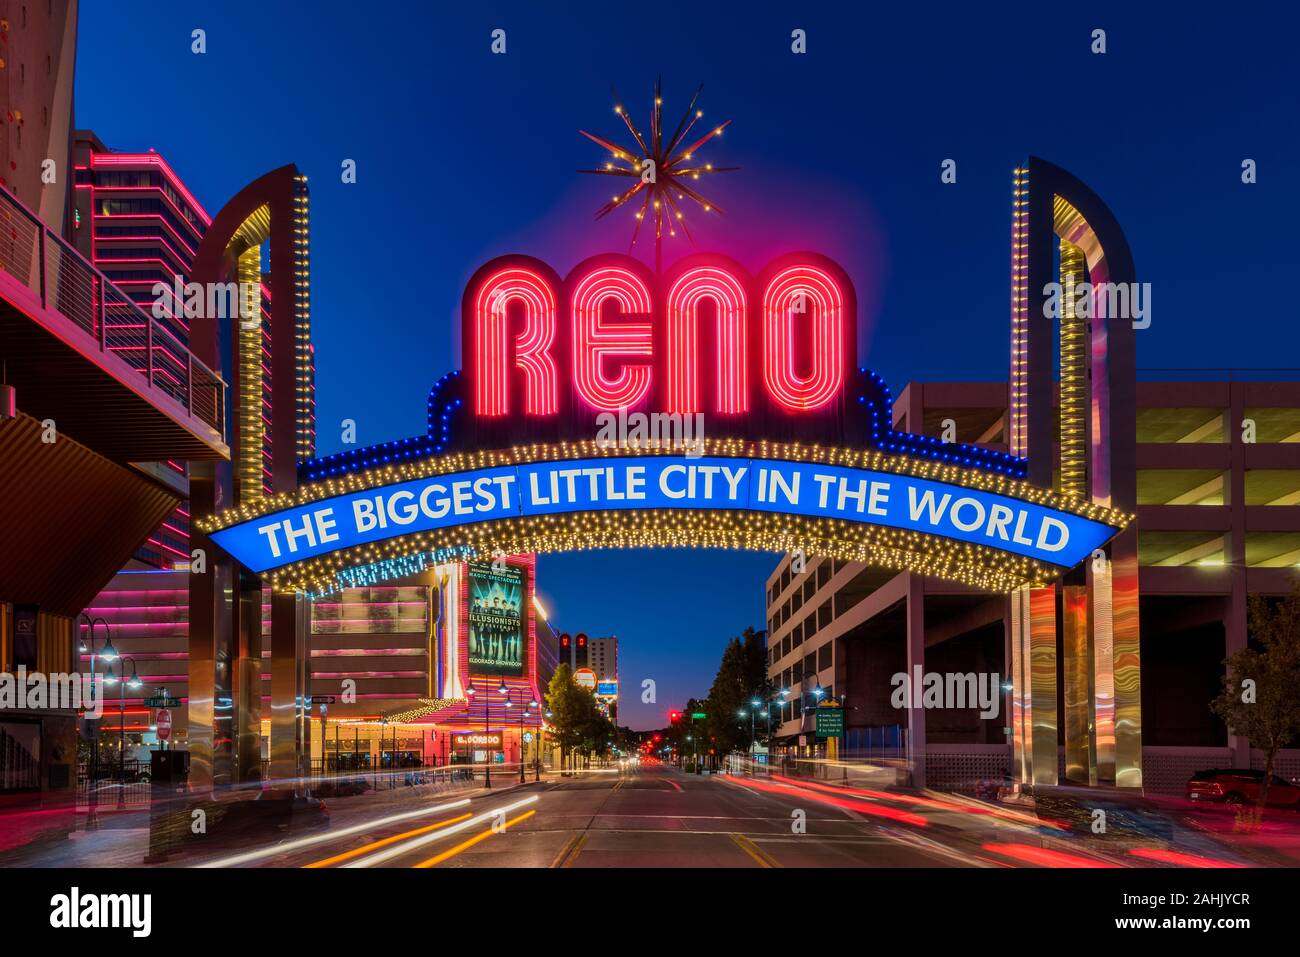 Signo de arco de reno en Reno, Nevada, EE.UU. al anochecer. Reno es la segunda ciudad más grande de Nevada y famosa por sus casinos y entretenimiento. Foto de stock